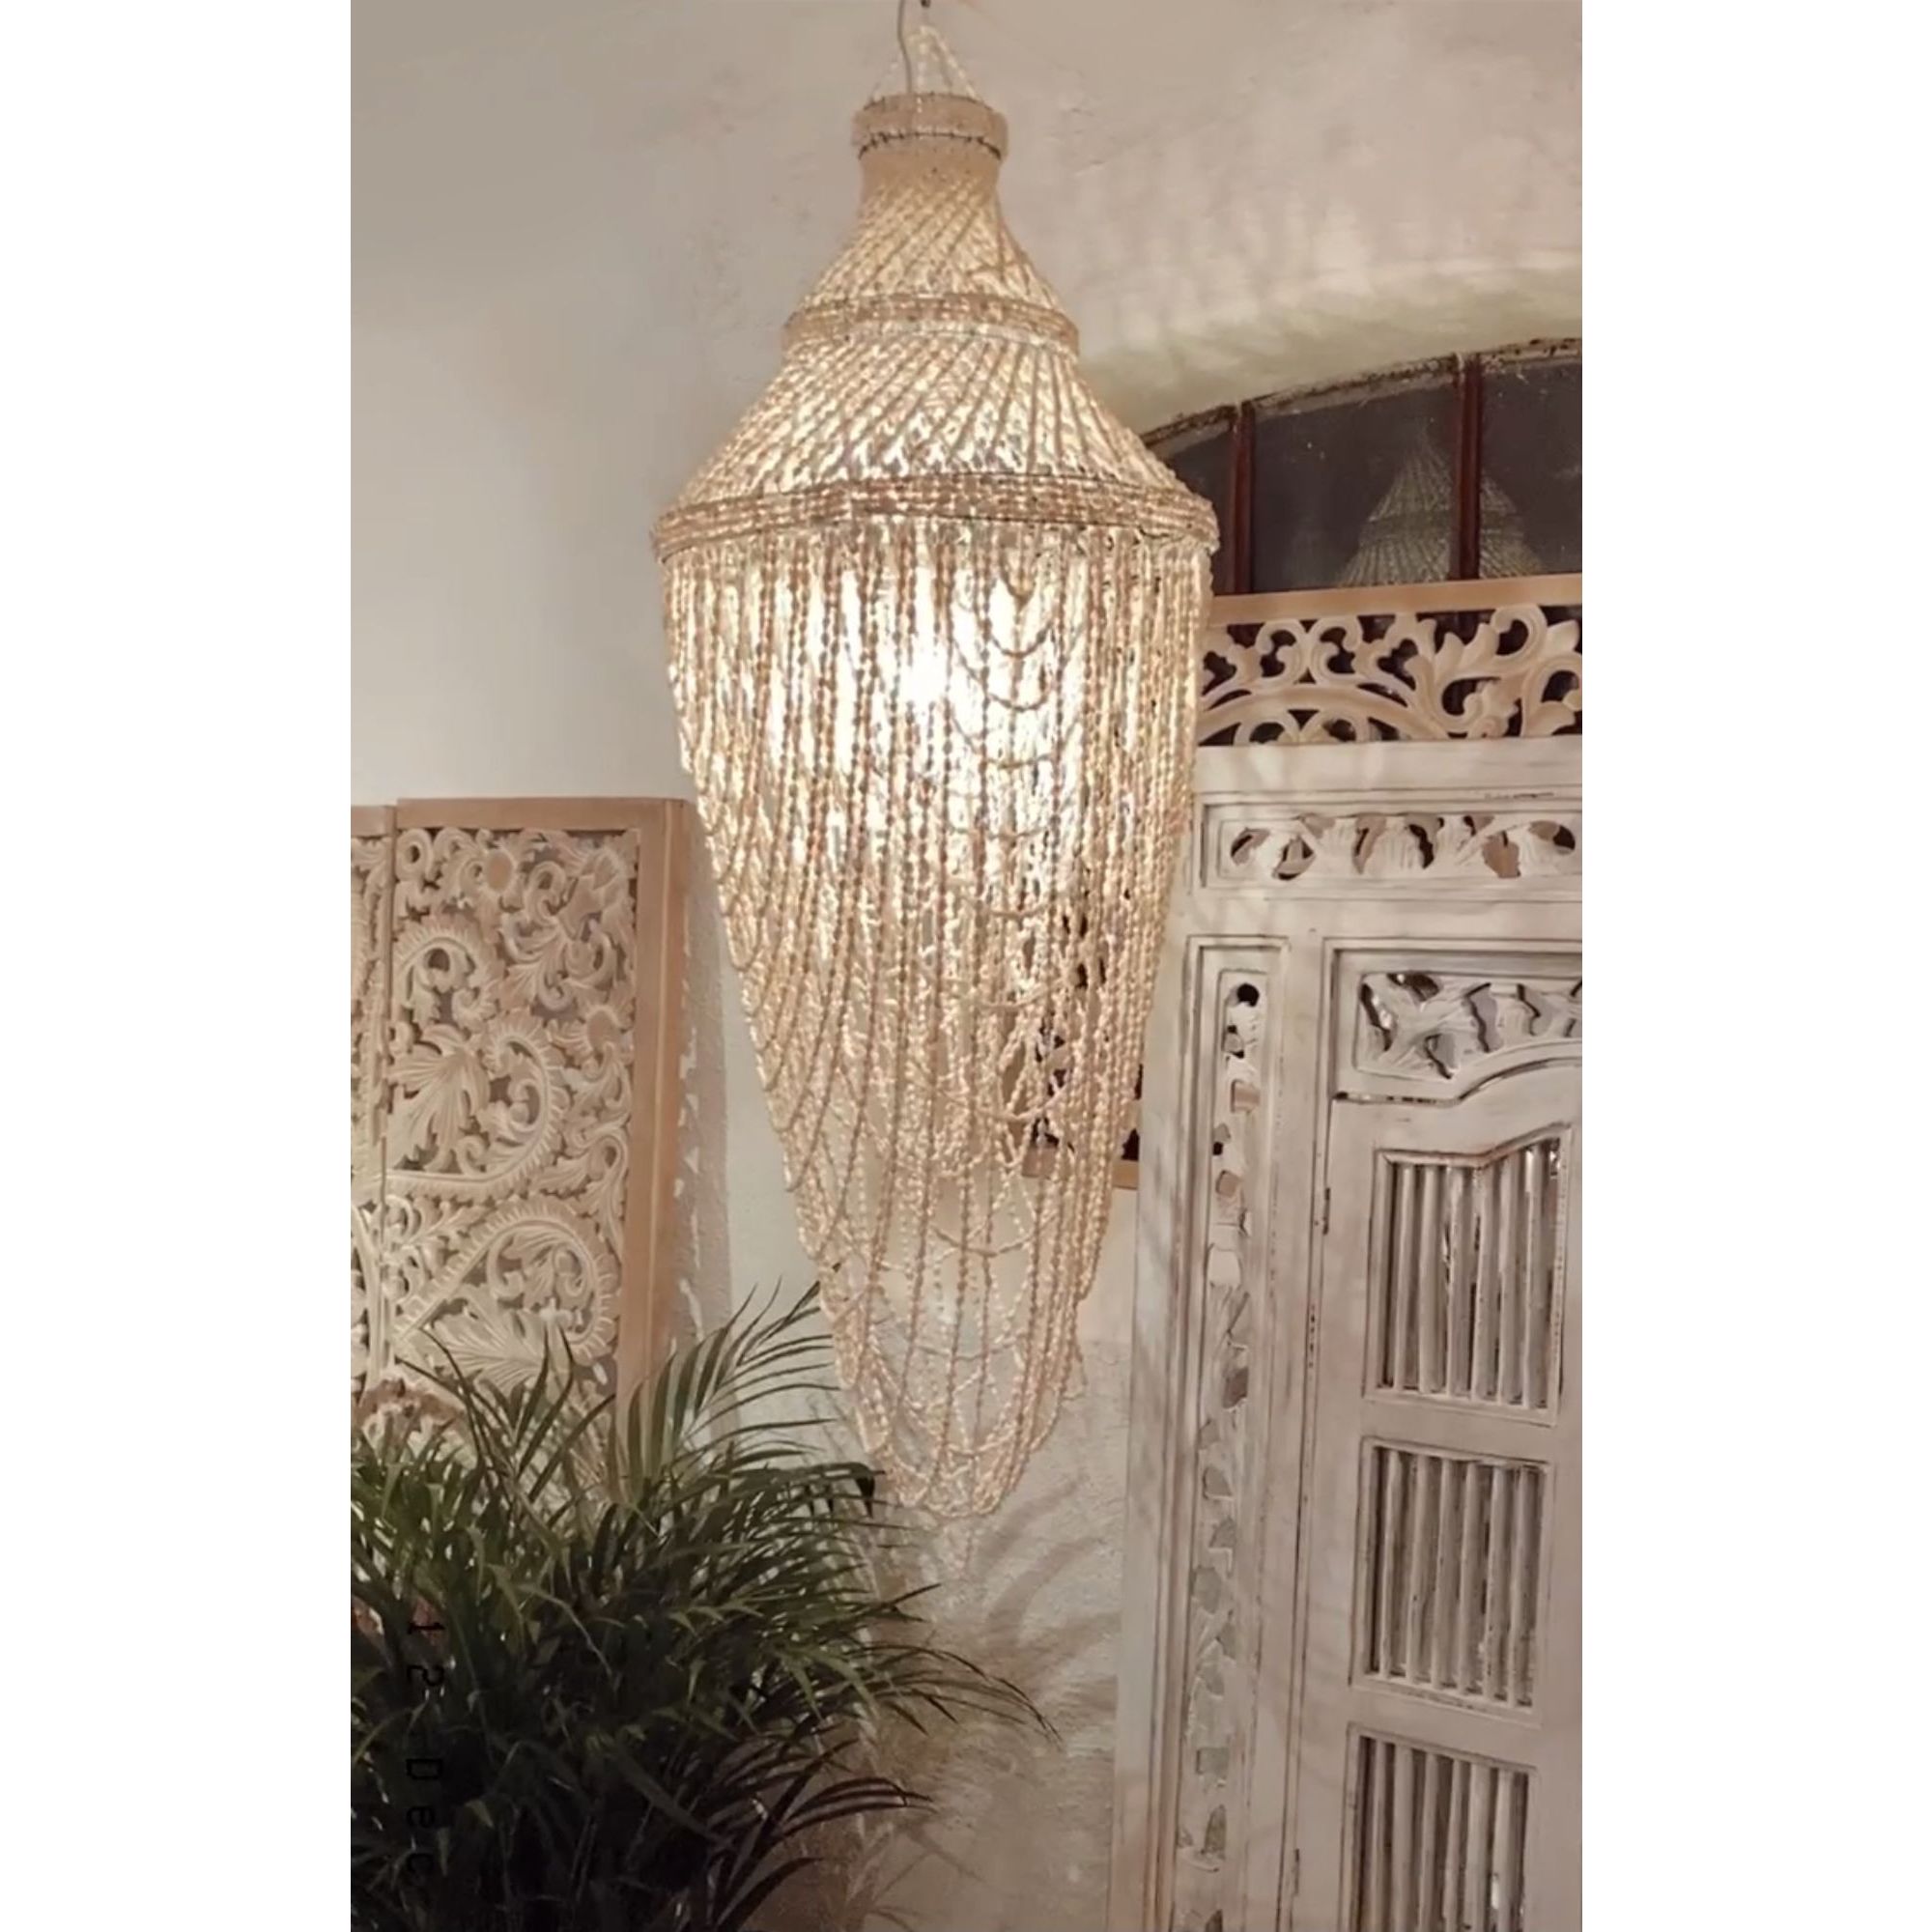 Snäcklampa från Bali